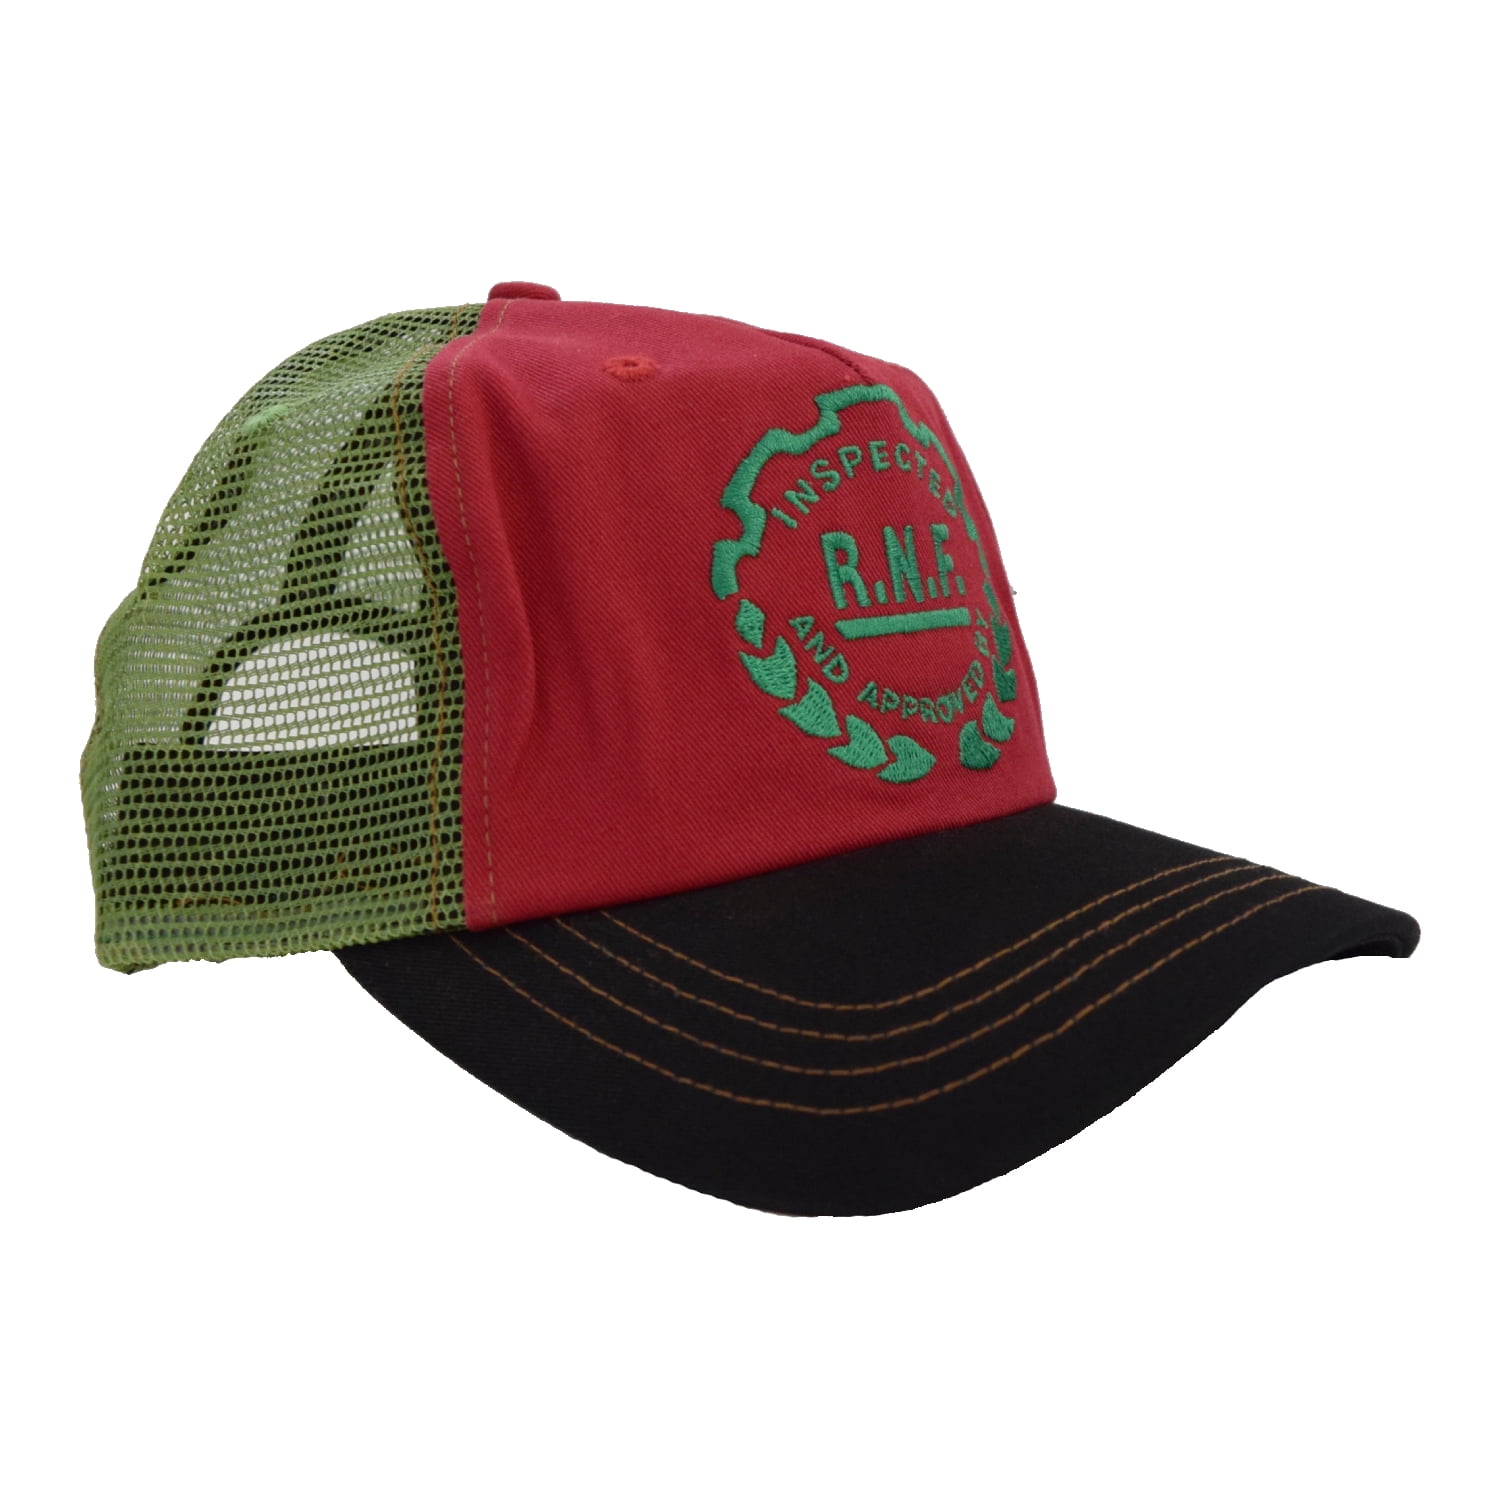 Brand New Von Dutch Light Pink And Black Trucker Mesh SnapBack Hat Cap